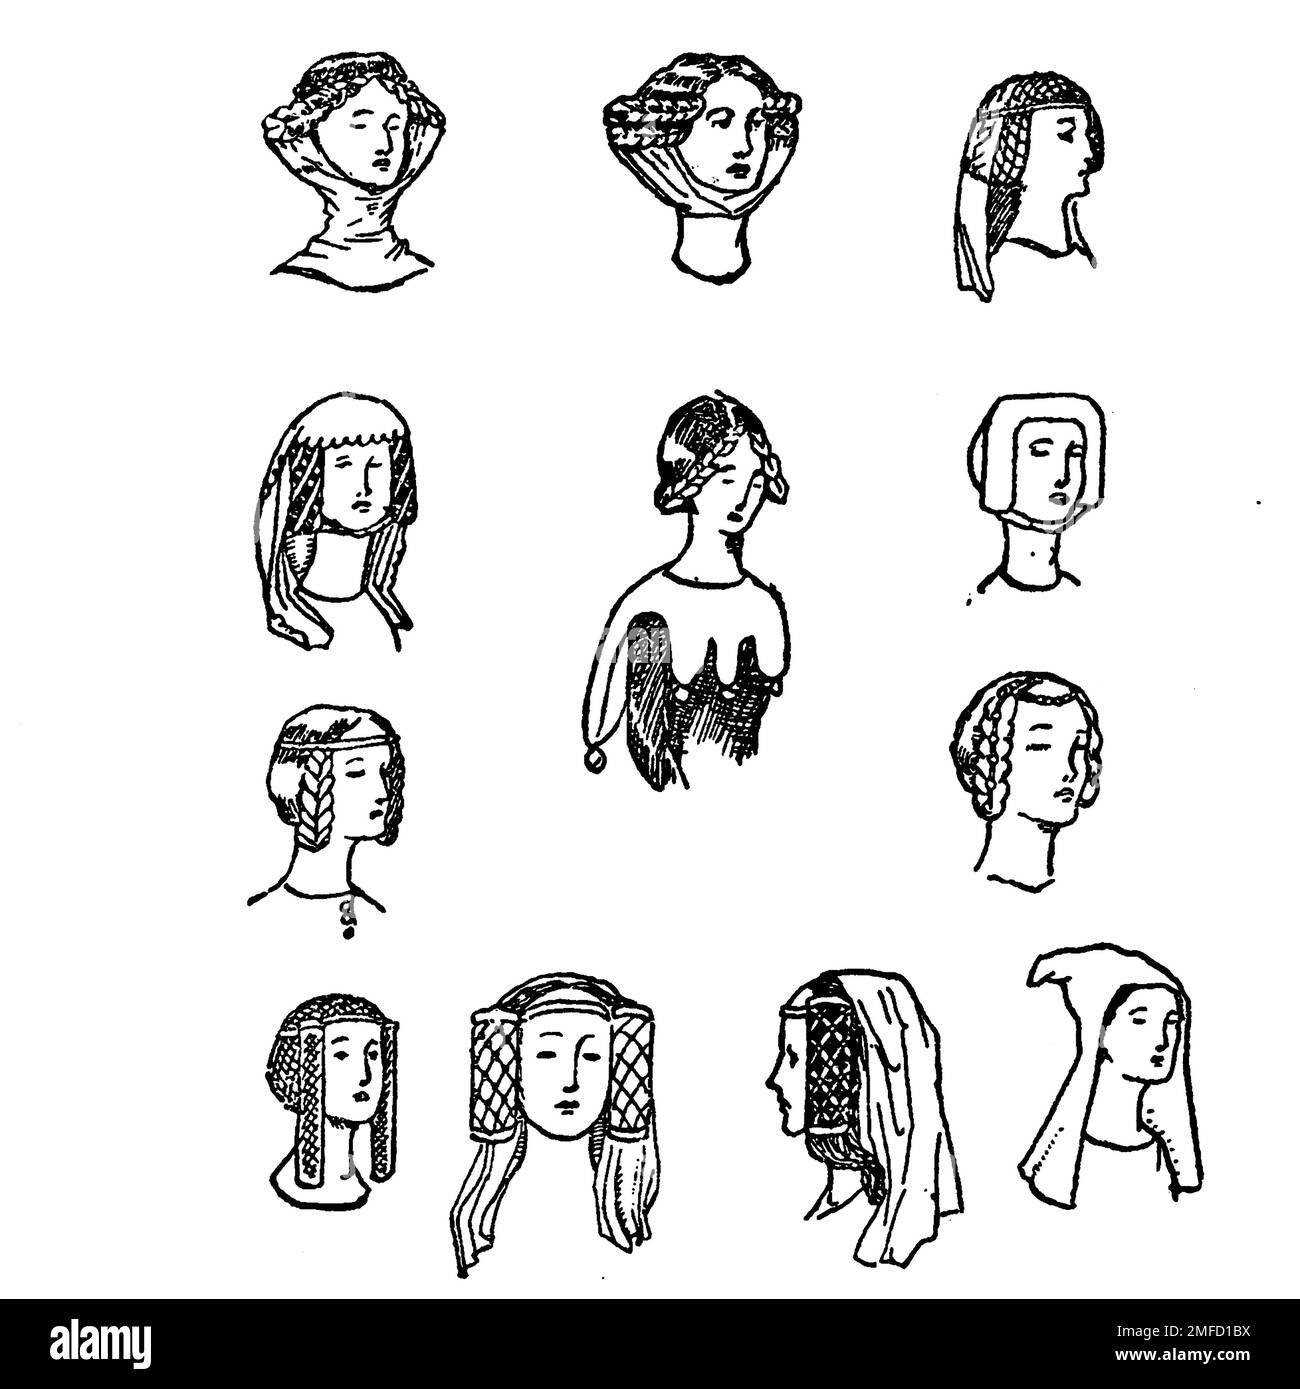 Strichzeichnung von Frauen-Kopfschmuck des 14. Jahrhunderts aus dem Buch " English Costume " von Dion Clayton Calthrop, 1878-1937 Publikationsdatum 1907 Publisher London, A. & C. Black Stockfoto